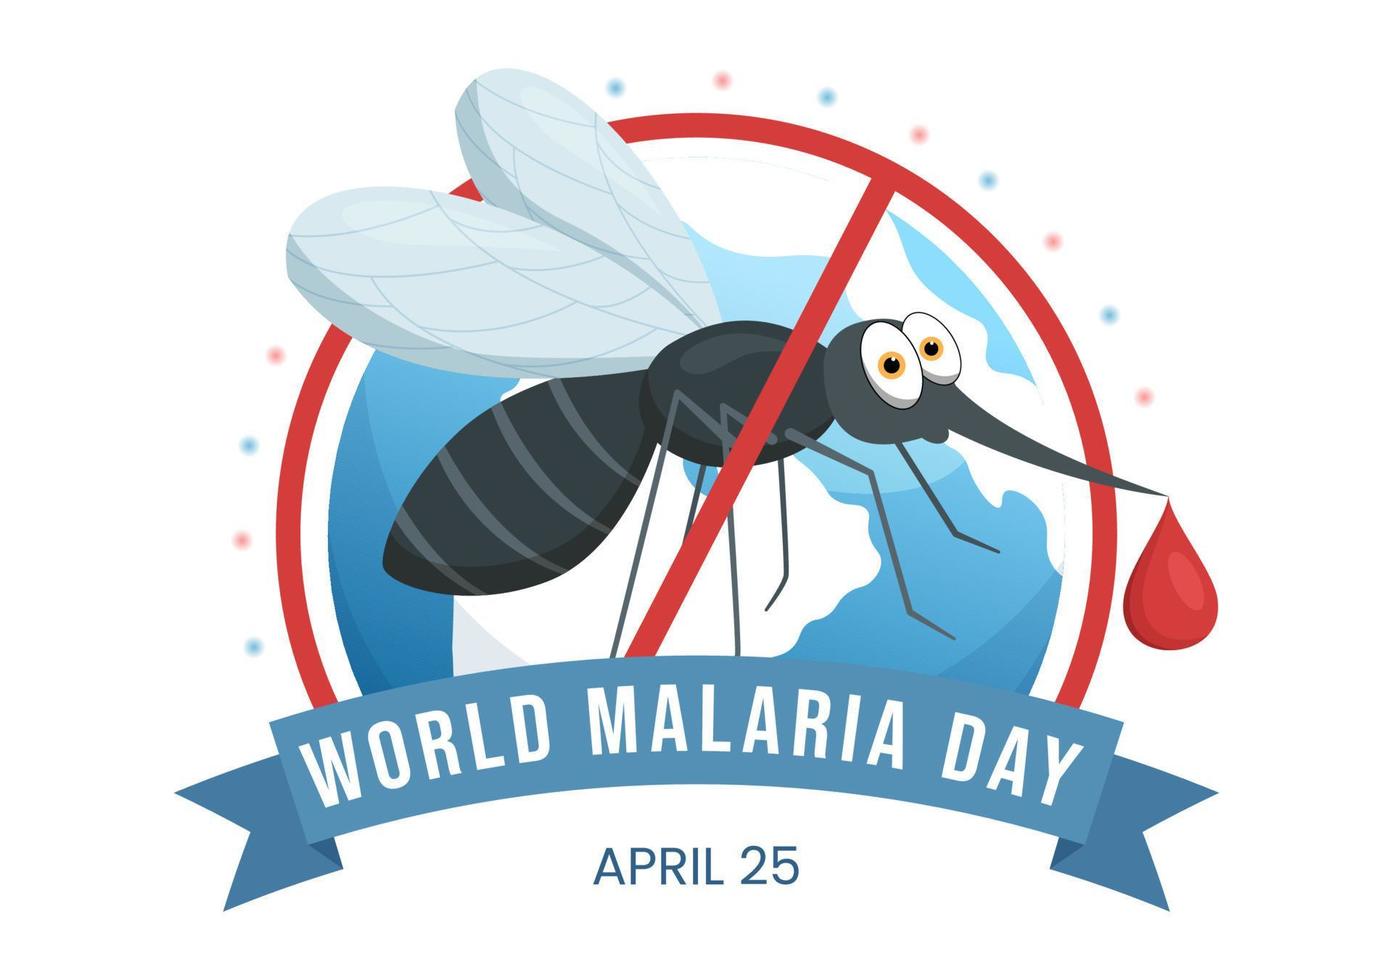 weltmalariatag am 25. april illustration mit vor mücken geschützter erde in flacher karikaturhand gezeichnet für webbanner oder zielseitenvorlagen vektor